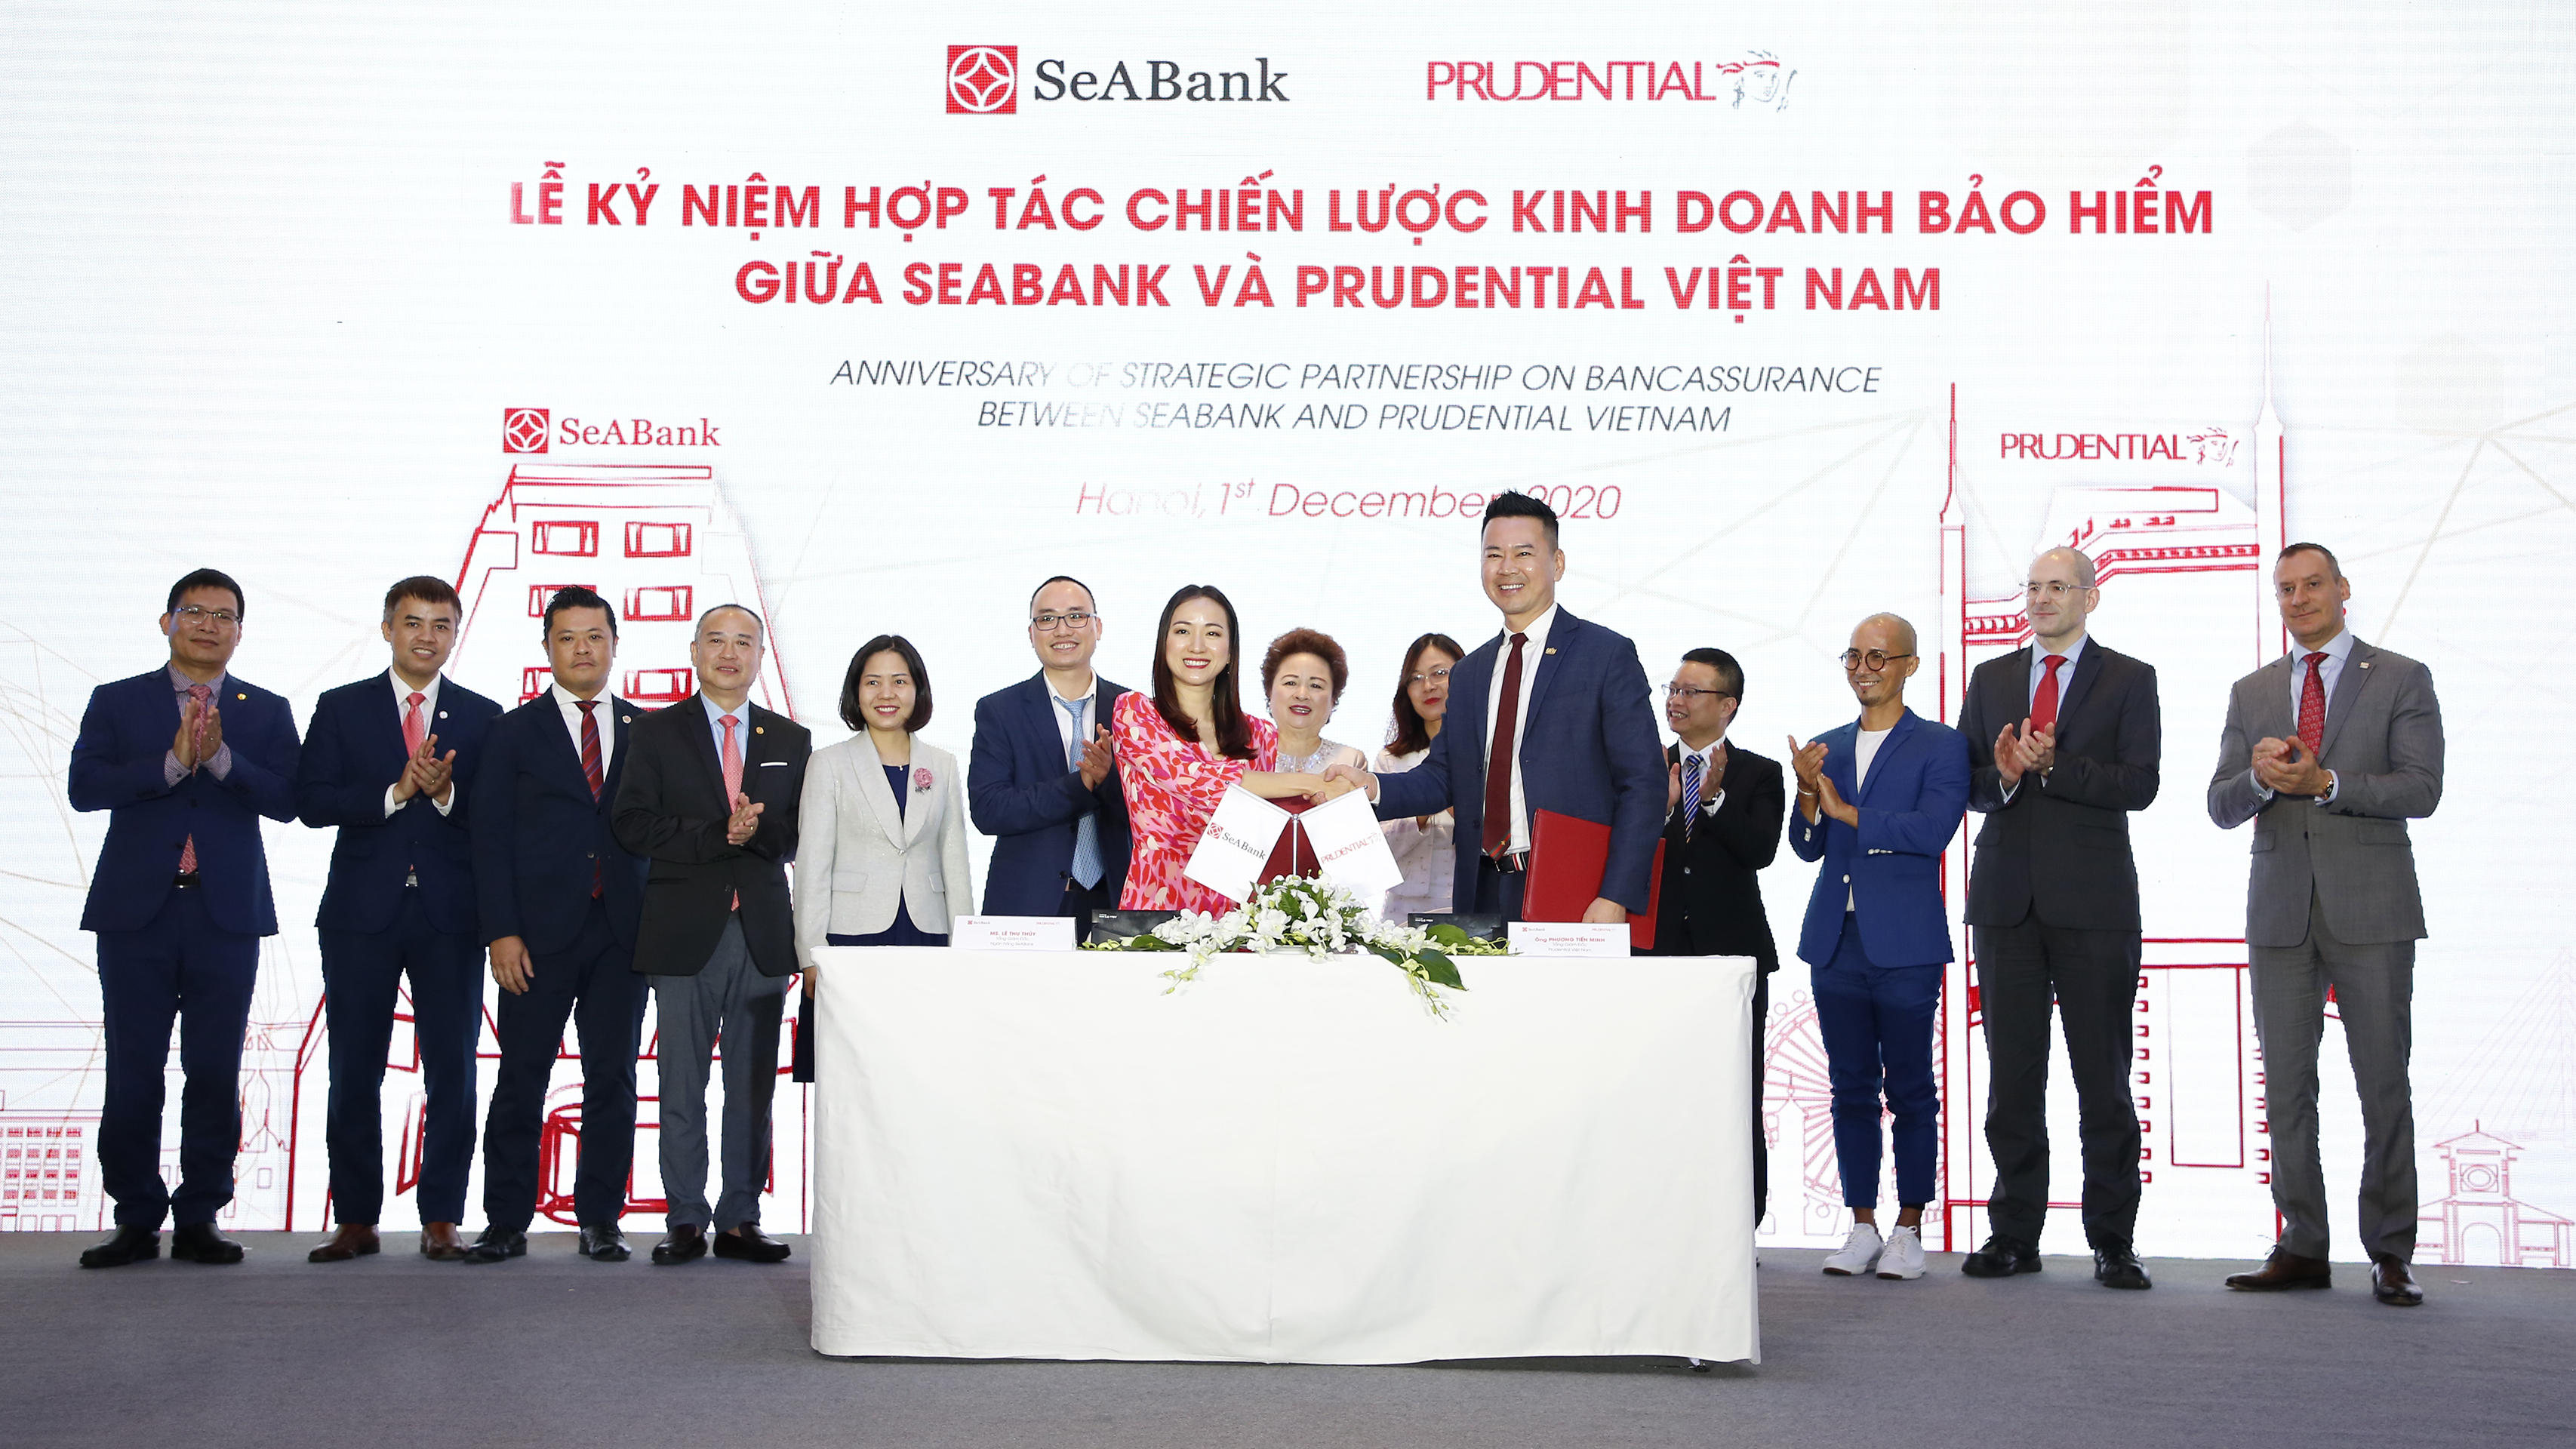 SeABank và những lợi thế để bứt phá giai đoạn 2021 - 2025